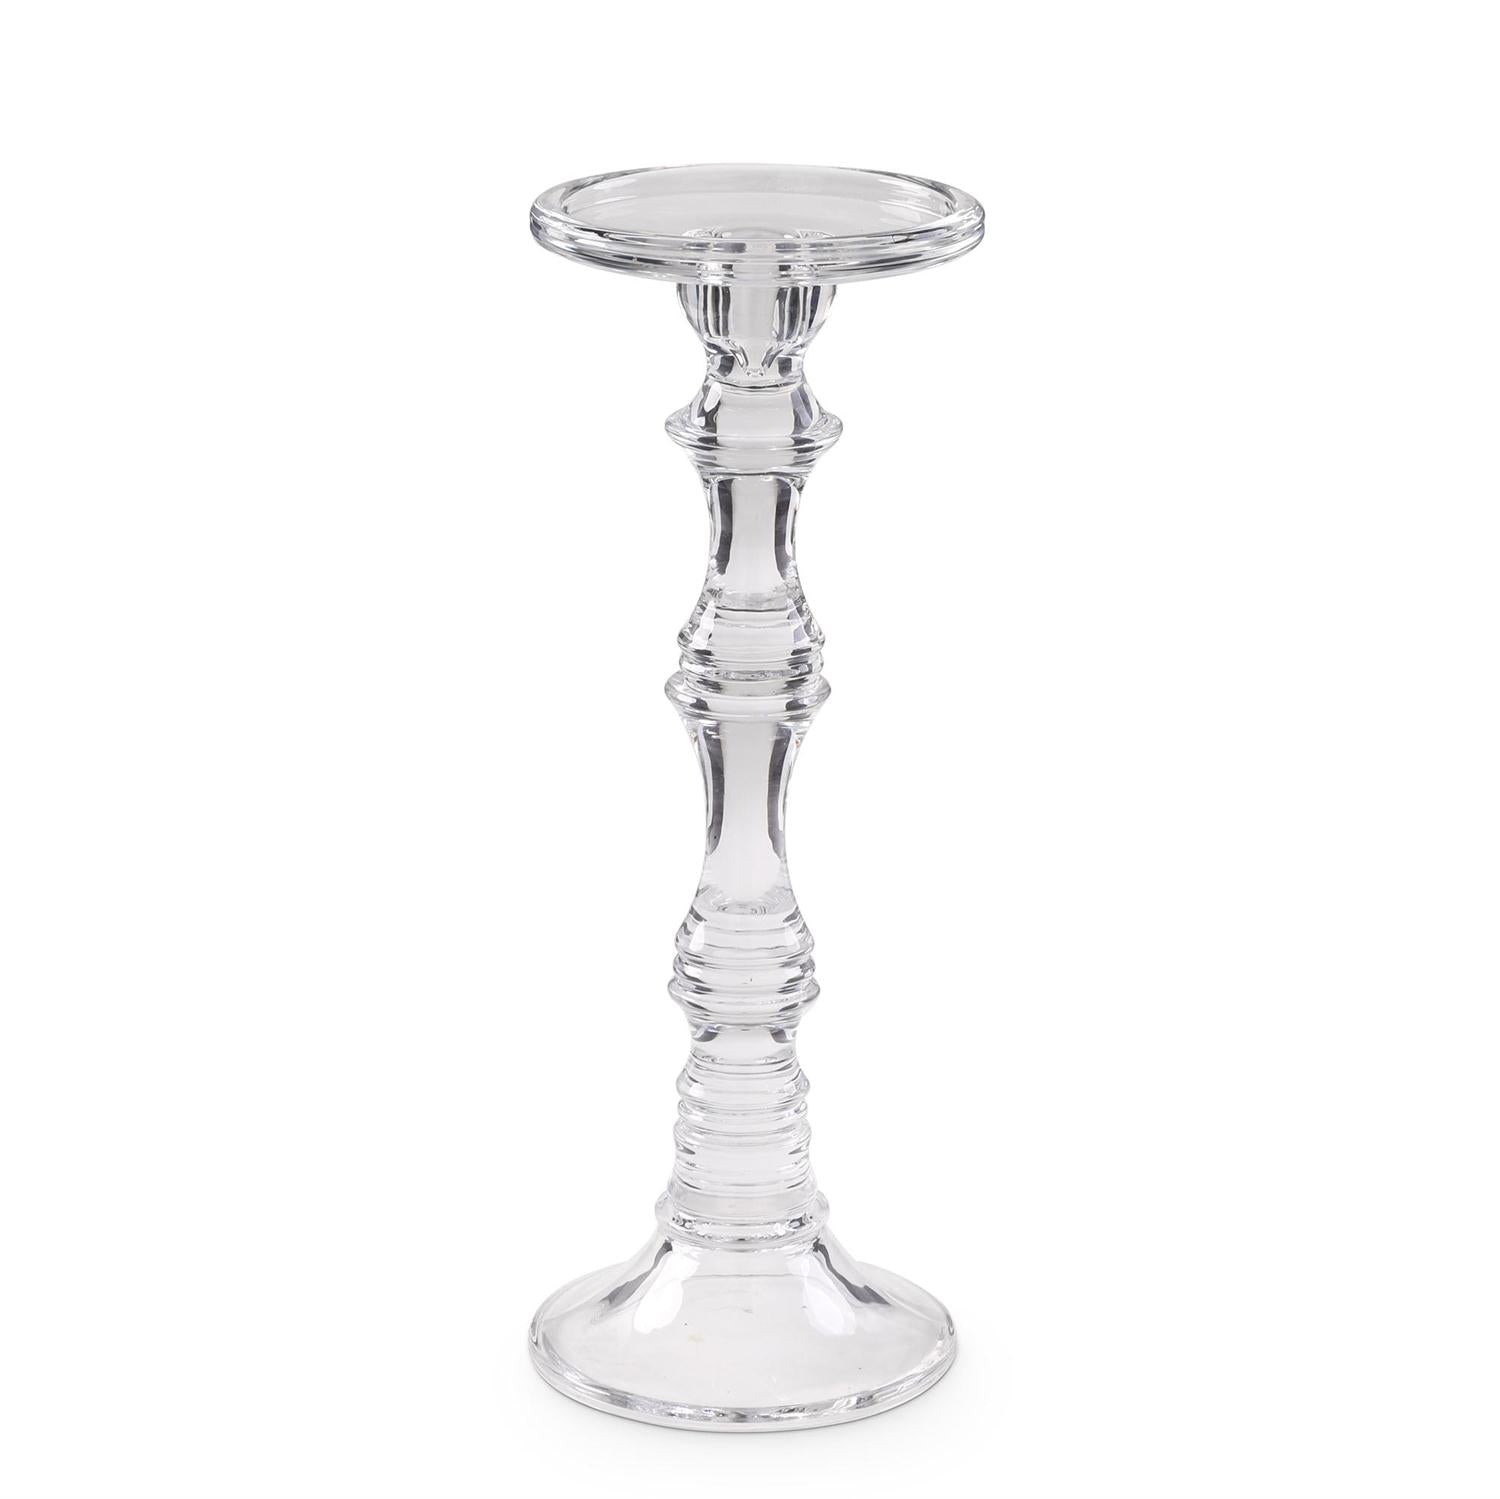 Slender Glass Candle Holder Set